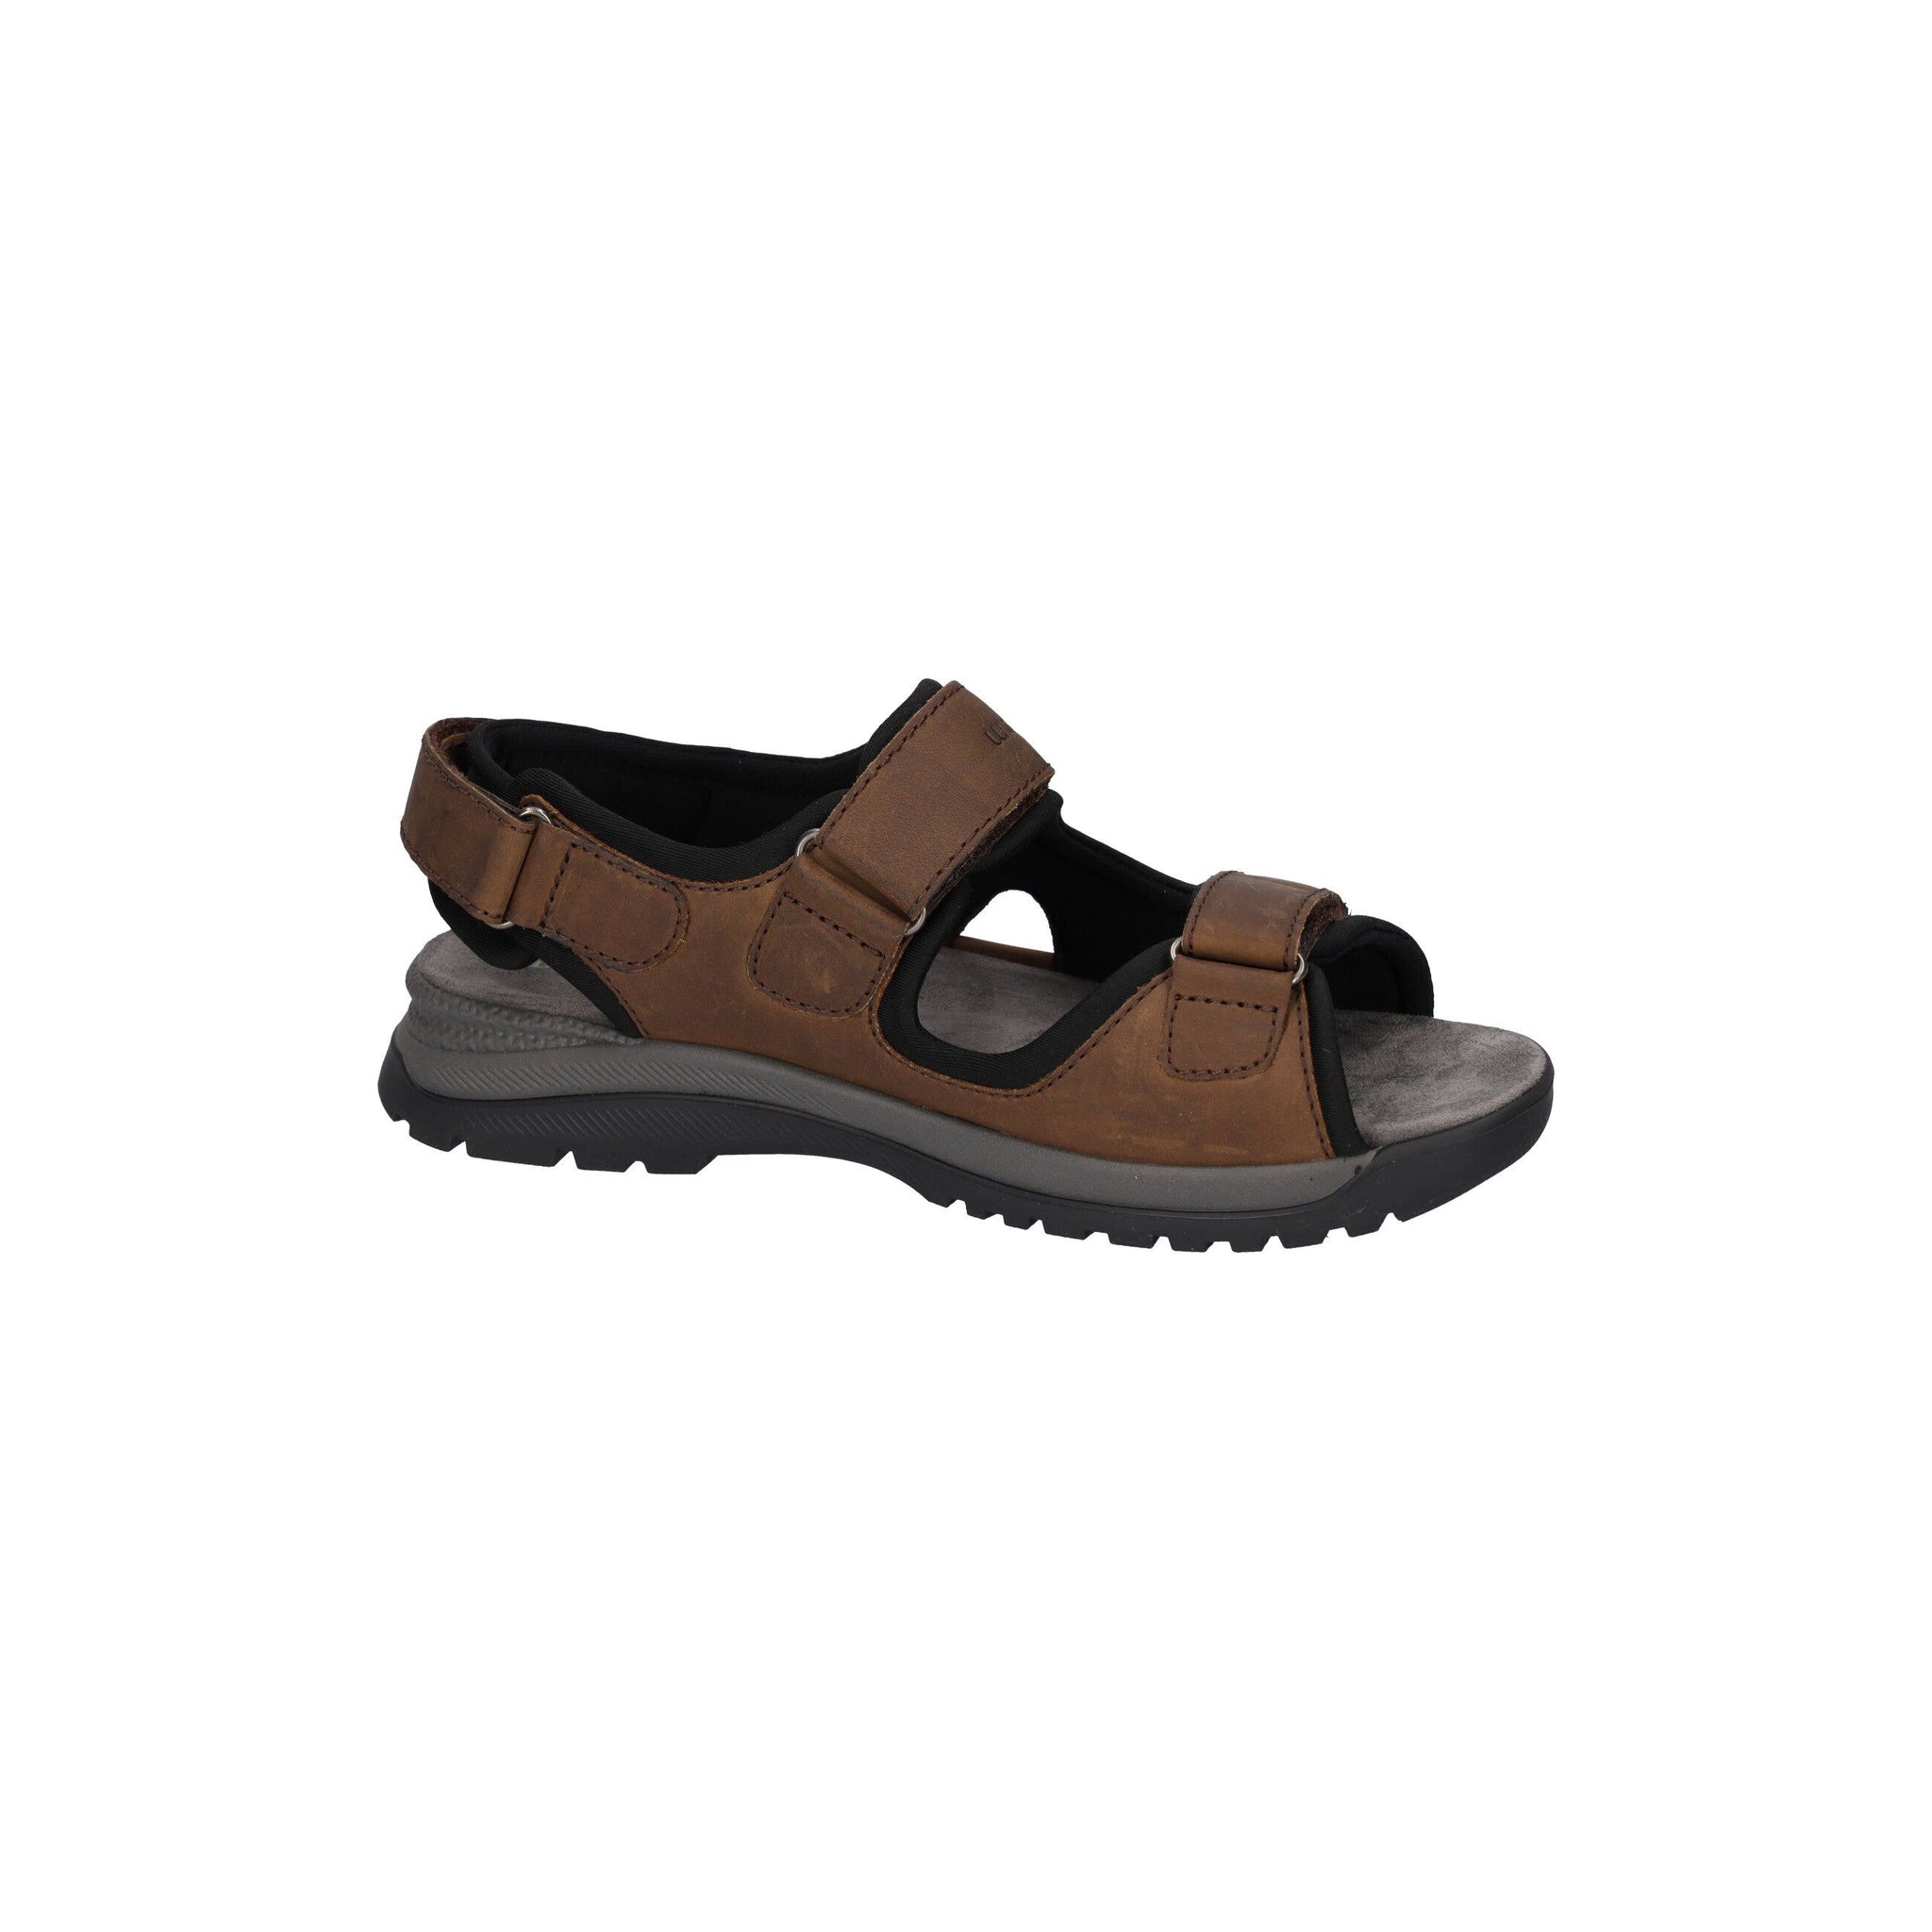 Waldlaufer Taro - Mens Sandal in Brown